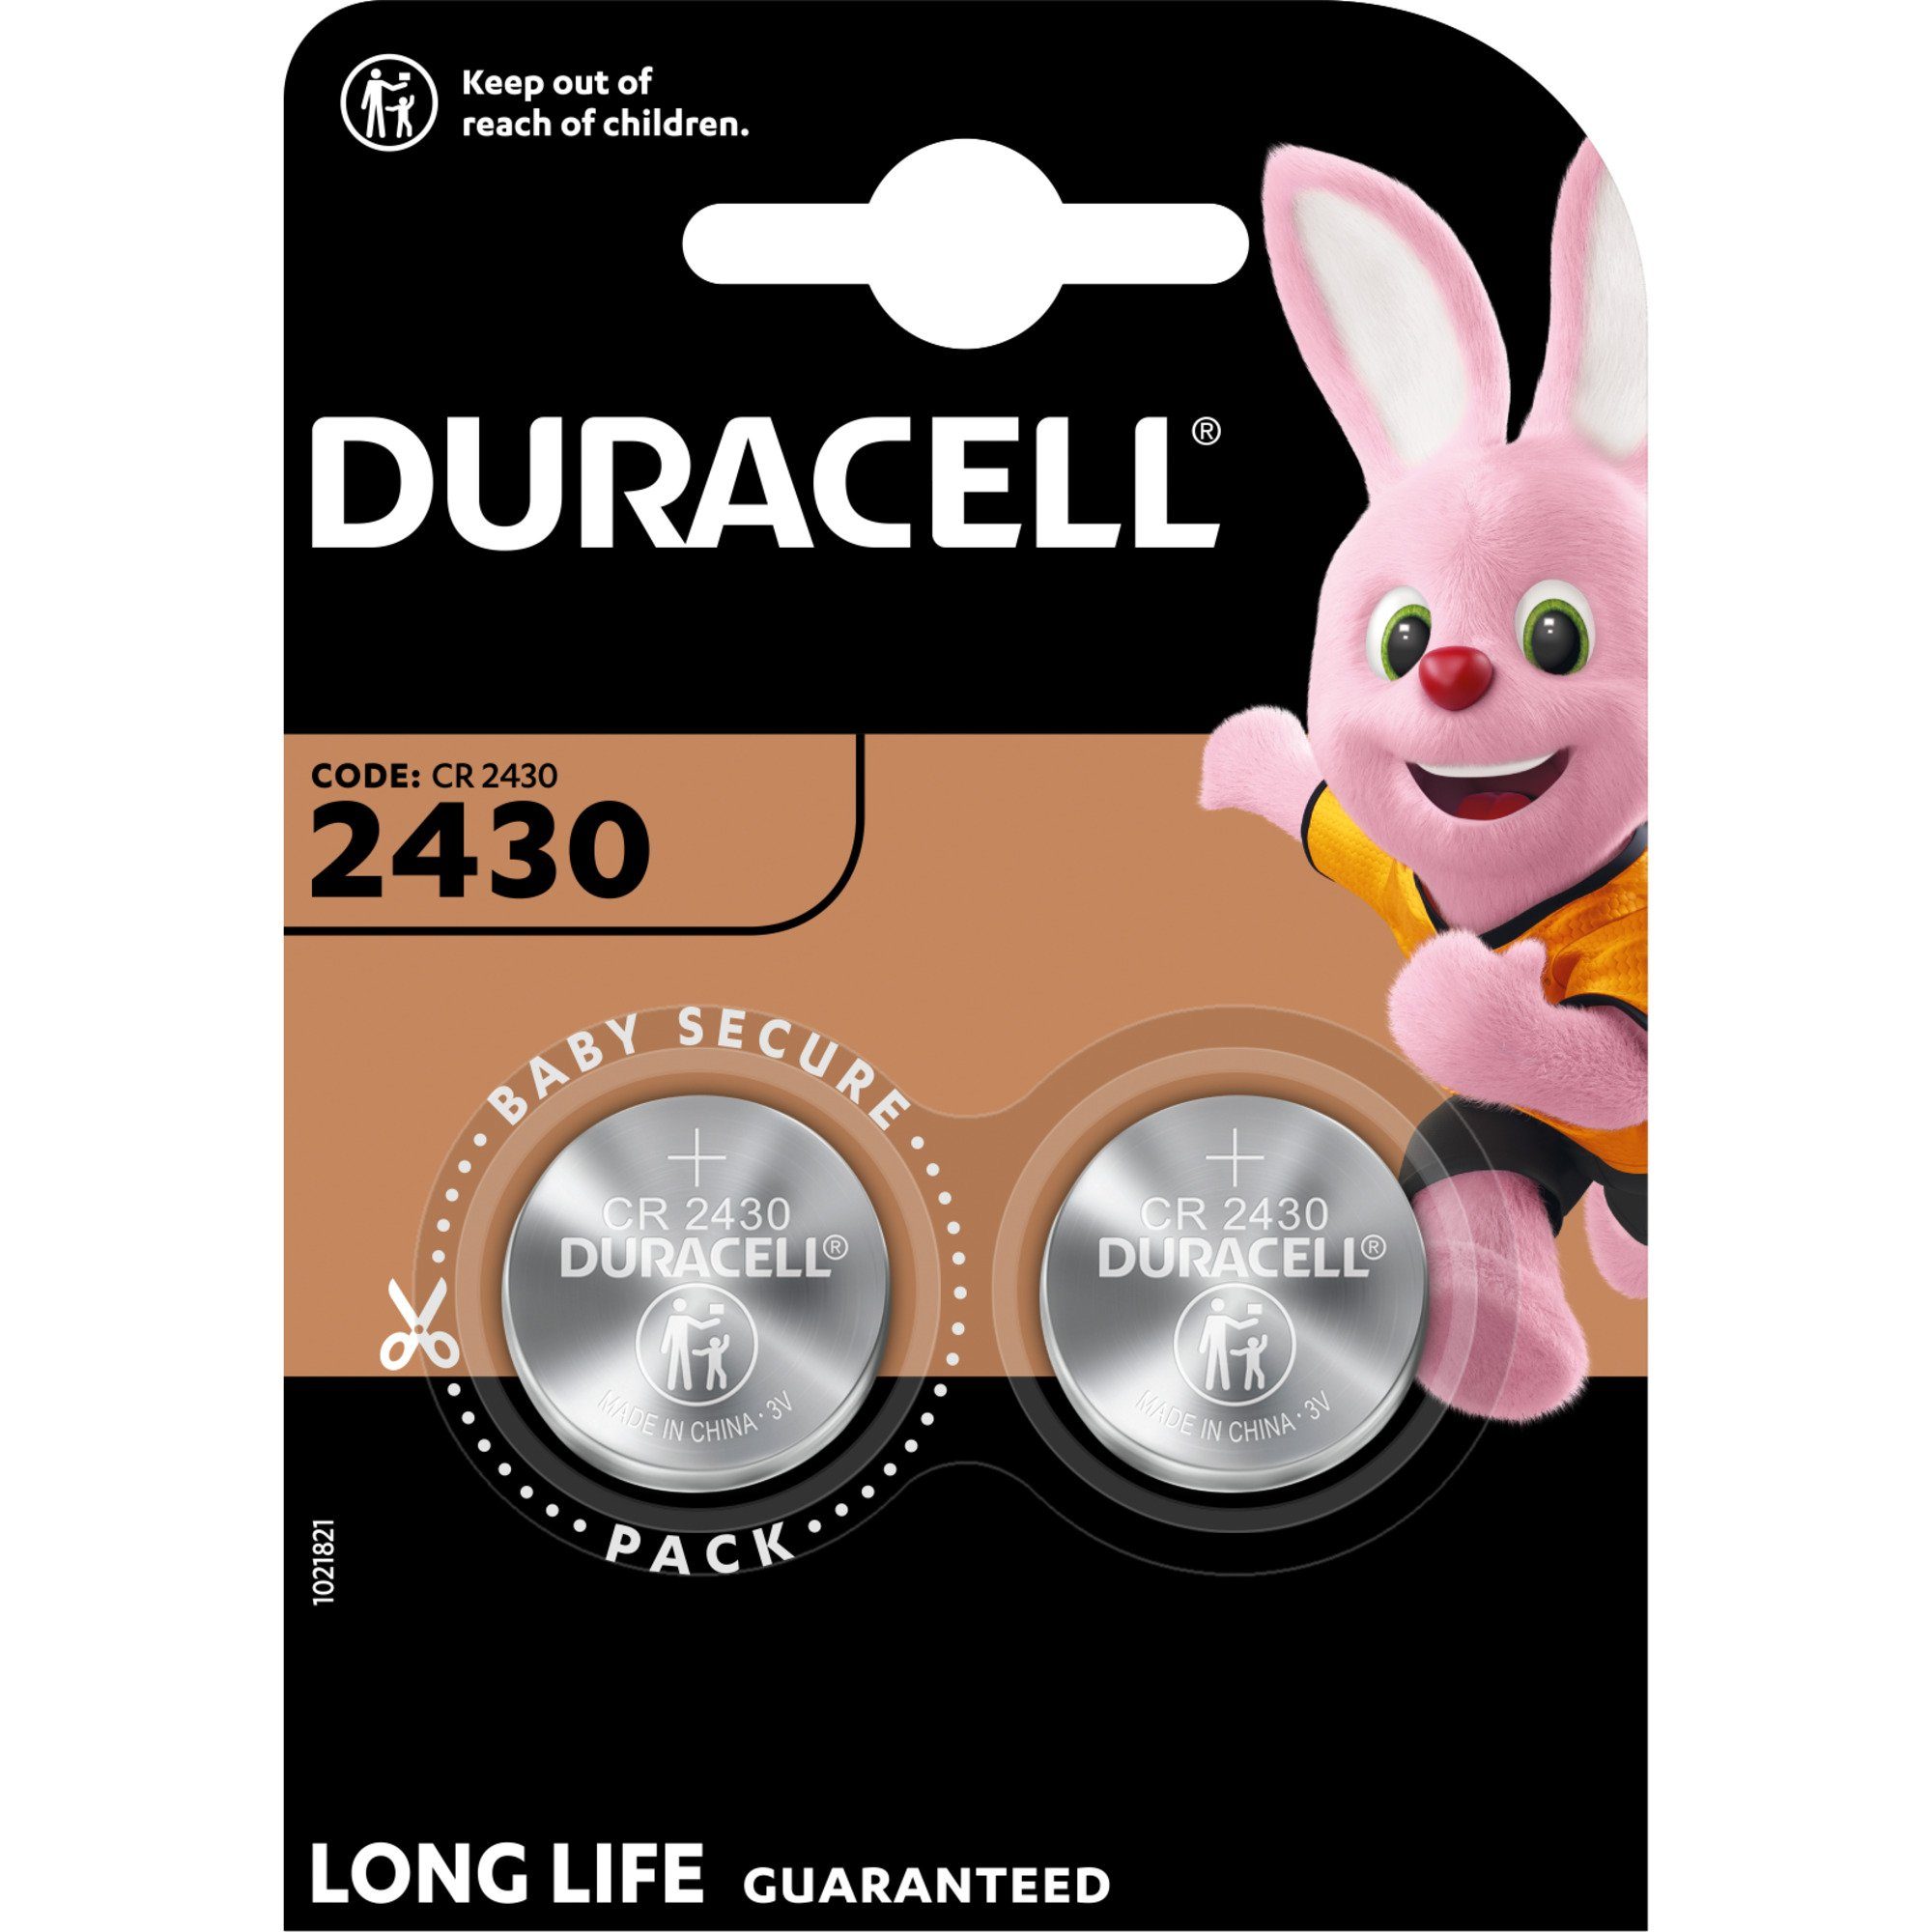 Duracell Duracell 2430 Batterie 3V, CR Lithium-Knopfzelle Batterie